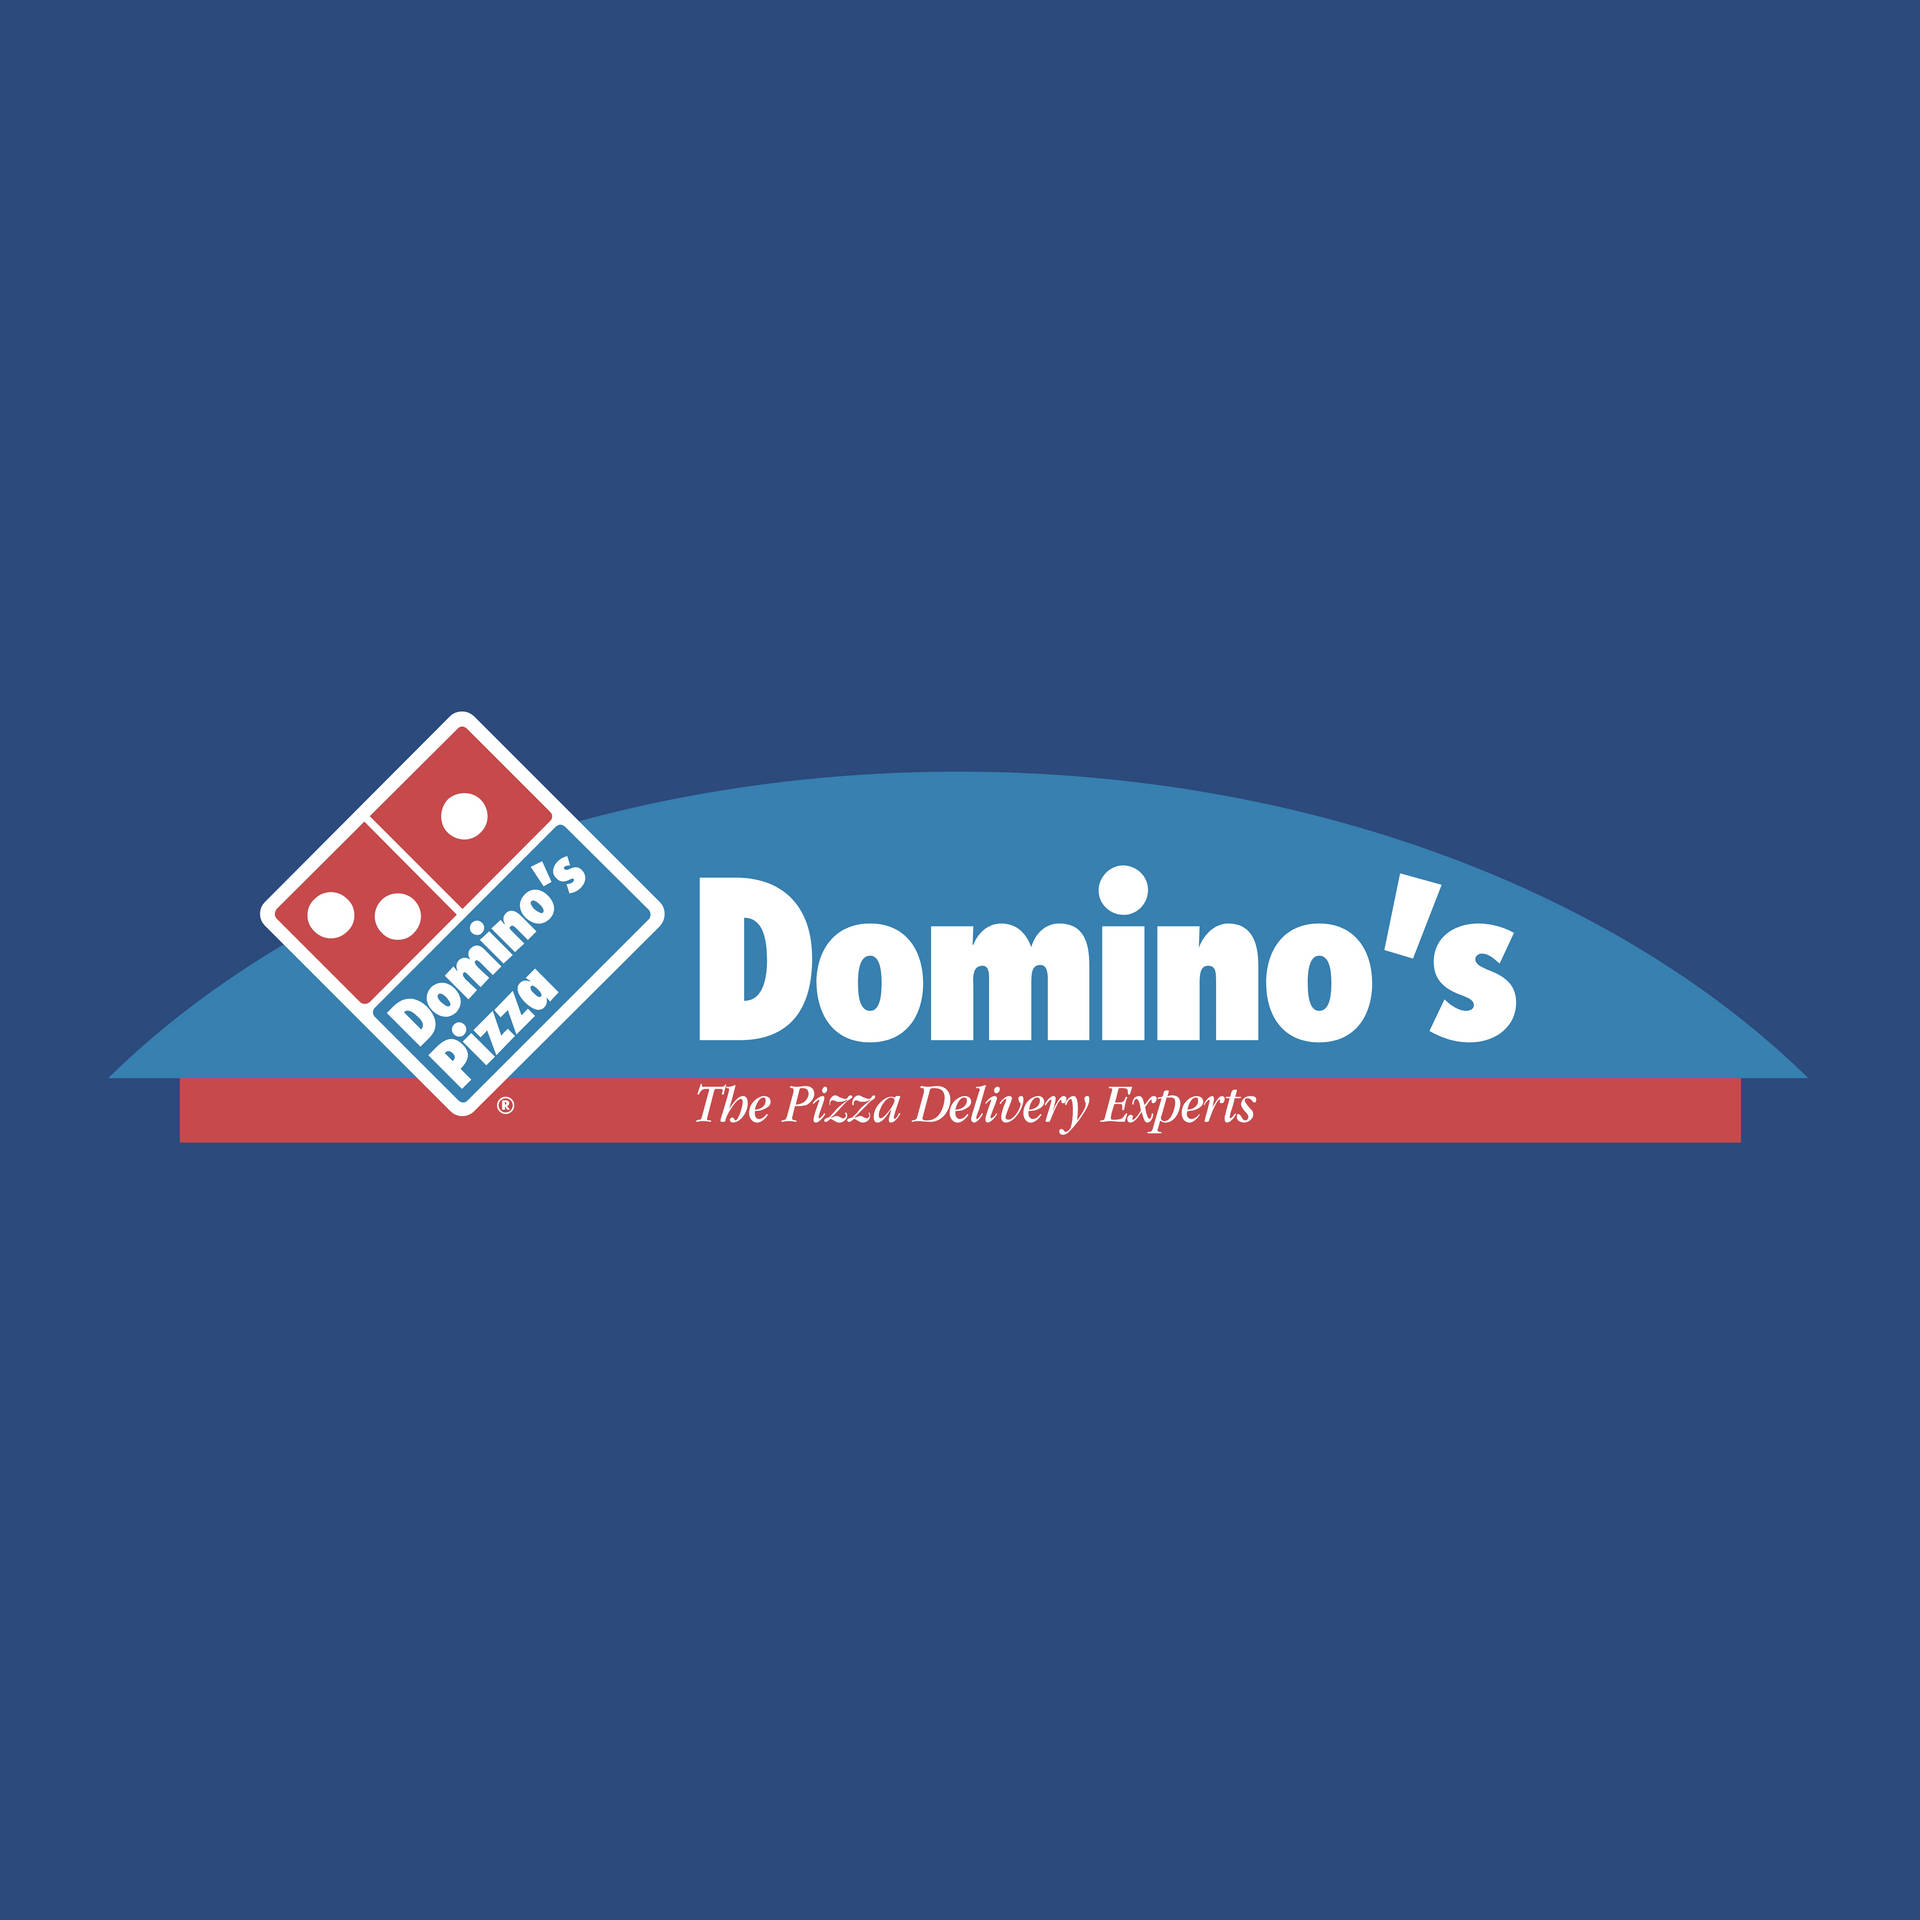 Logotipoda Dominos Pizza Em Vetor. Papel de Parede